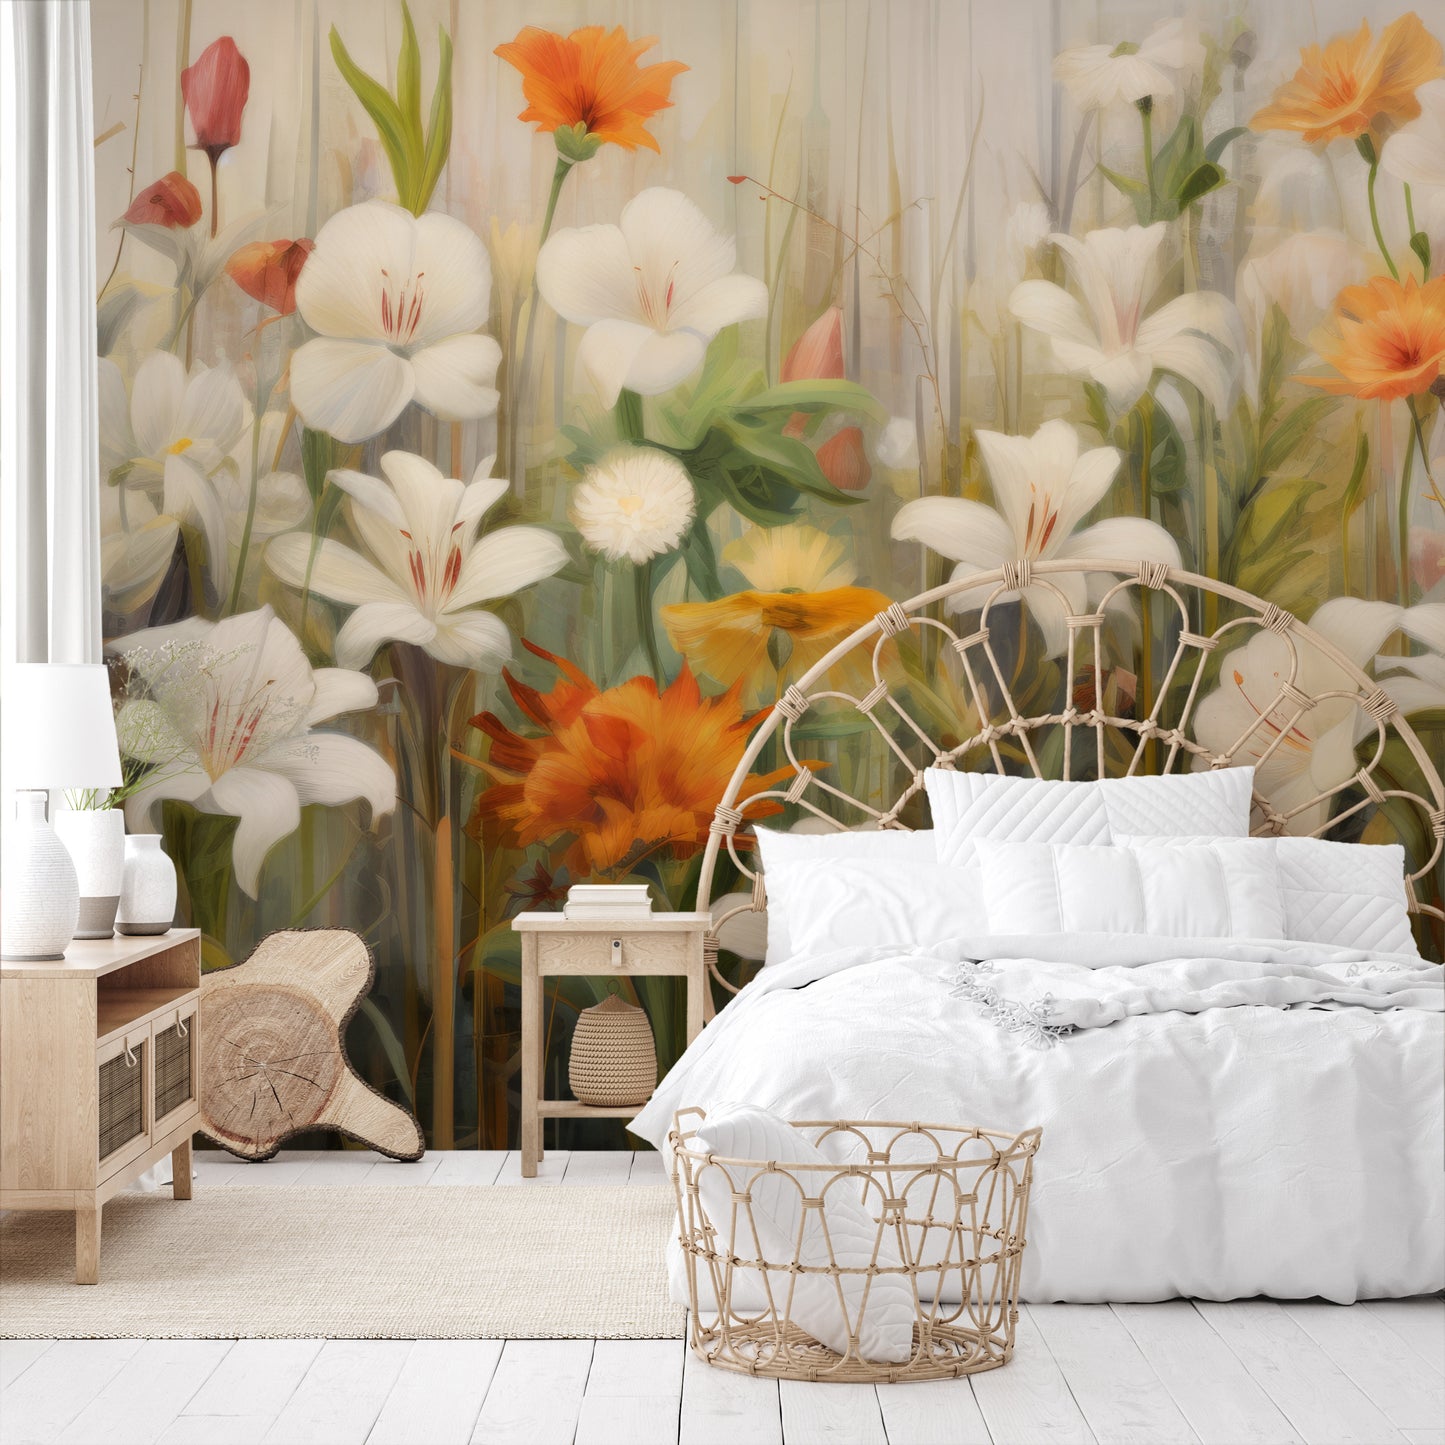 Wzór fototapety o nazwie Floral Sunrise pokazanej w kontekście pomieszczenia.